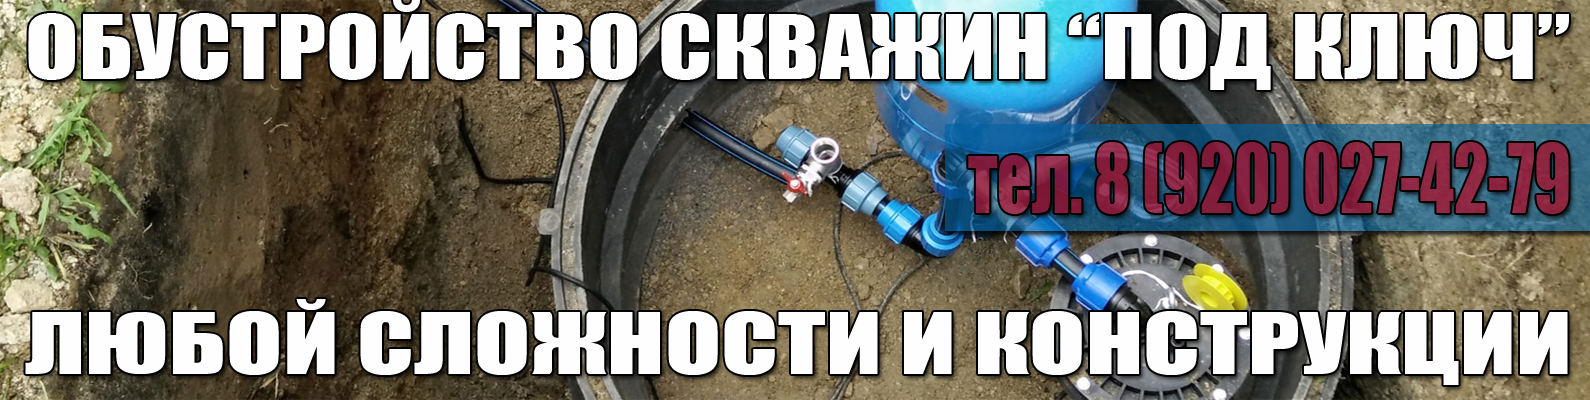 Обустройство скважин на воду любой сложности в Нижнем новгороде и Нижегородской области